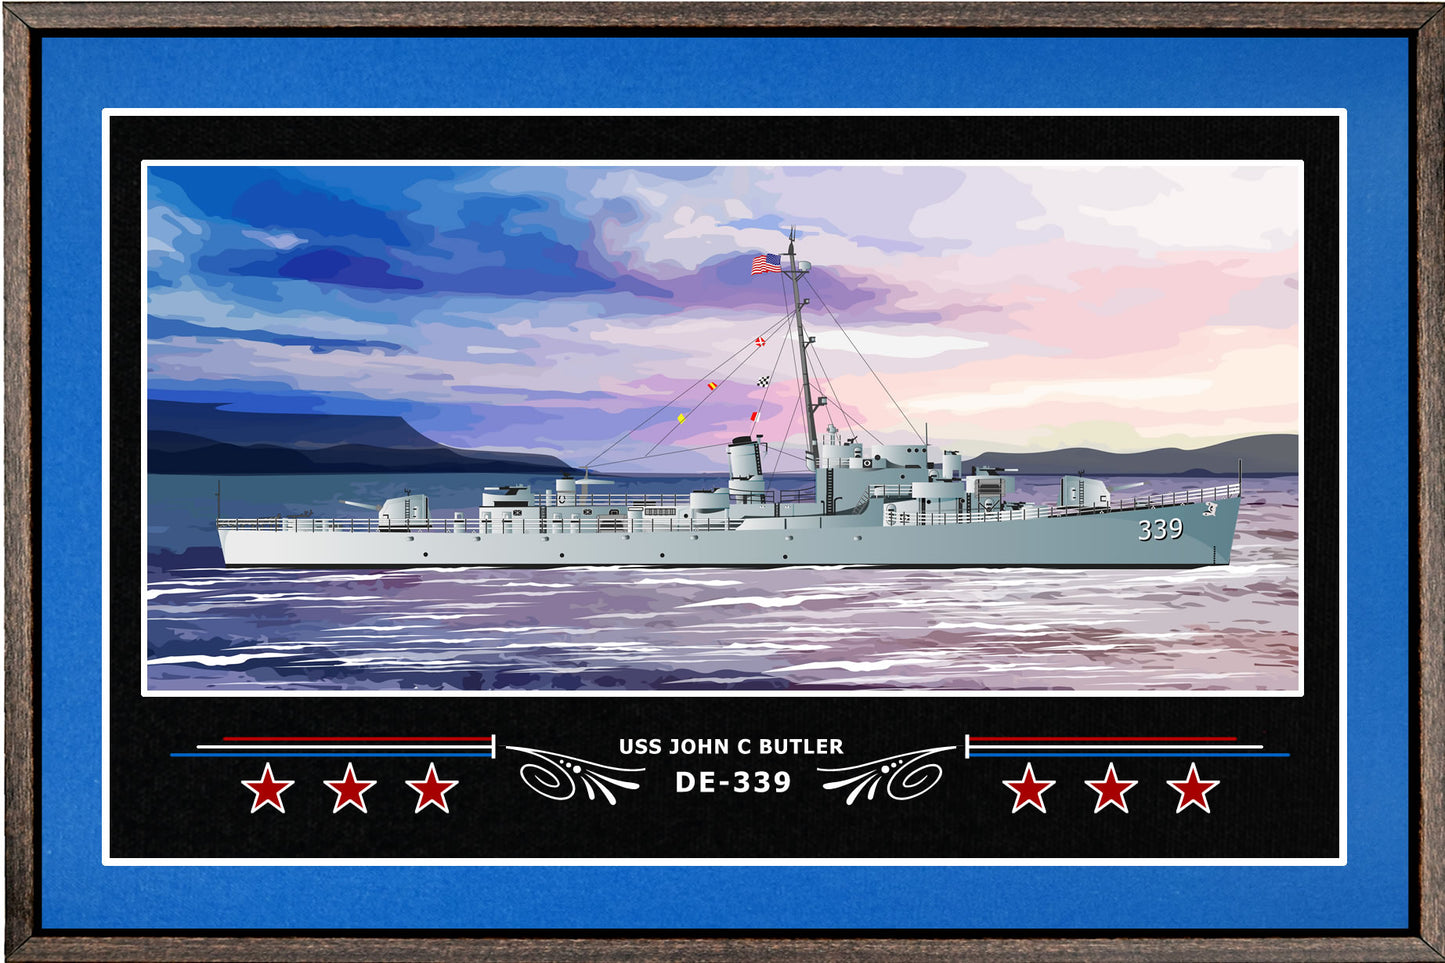 USS JOHN C BUTLER DE 339 BOX FRAMED CANVAS ART BLUE